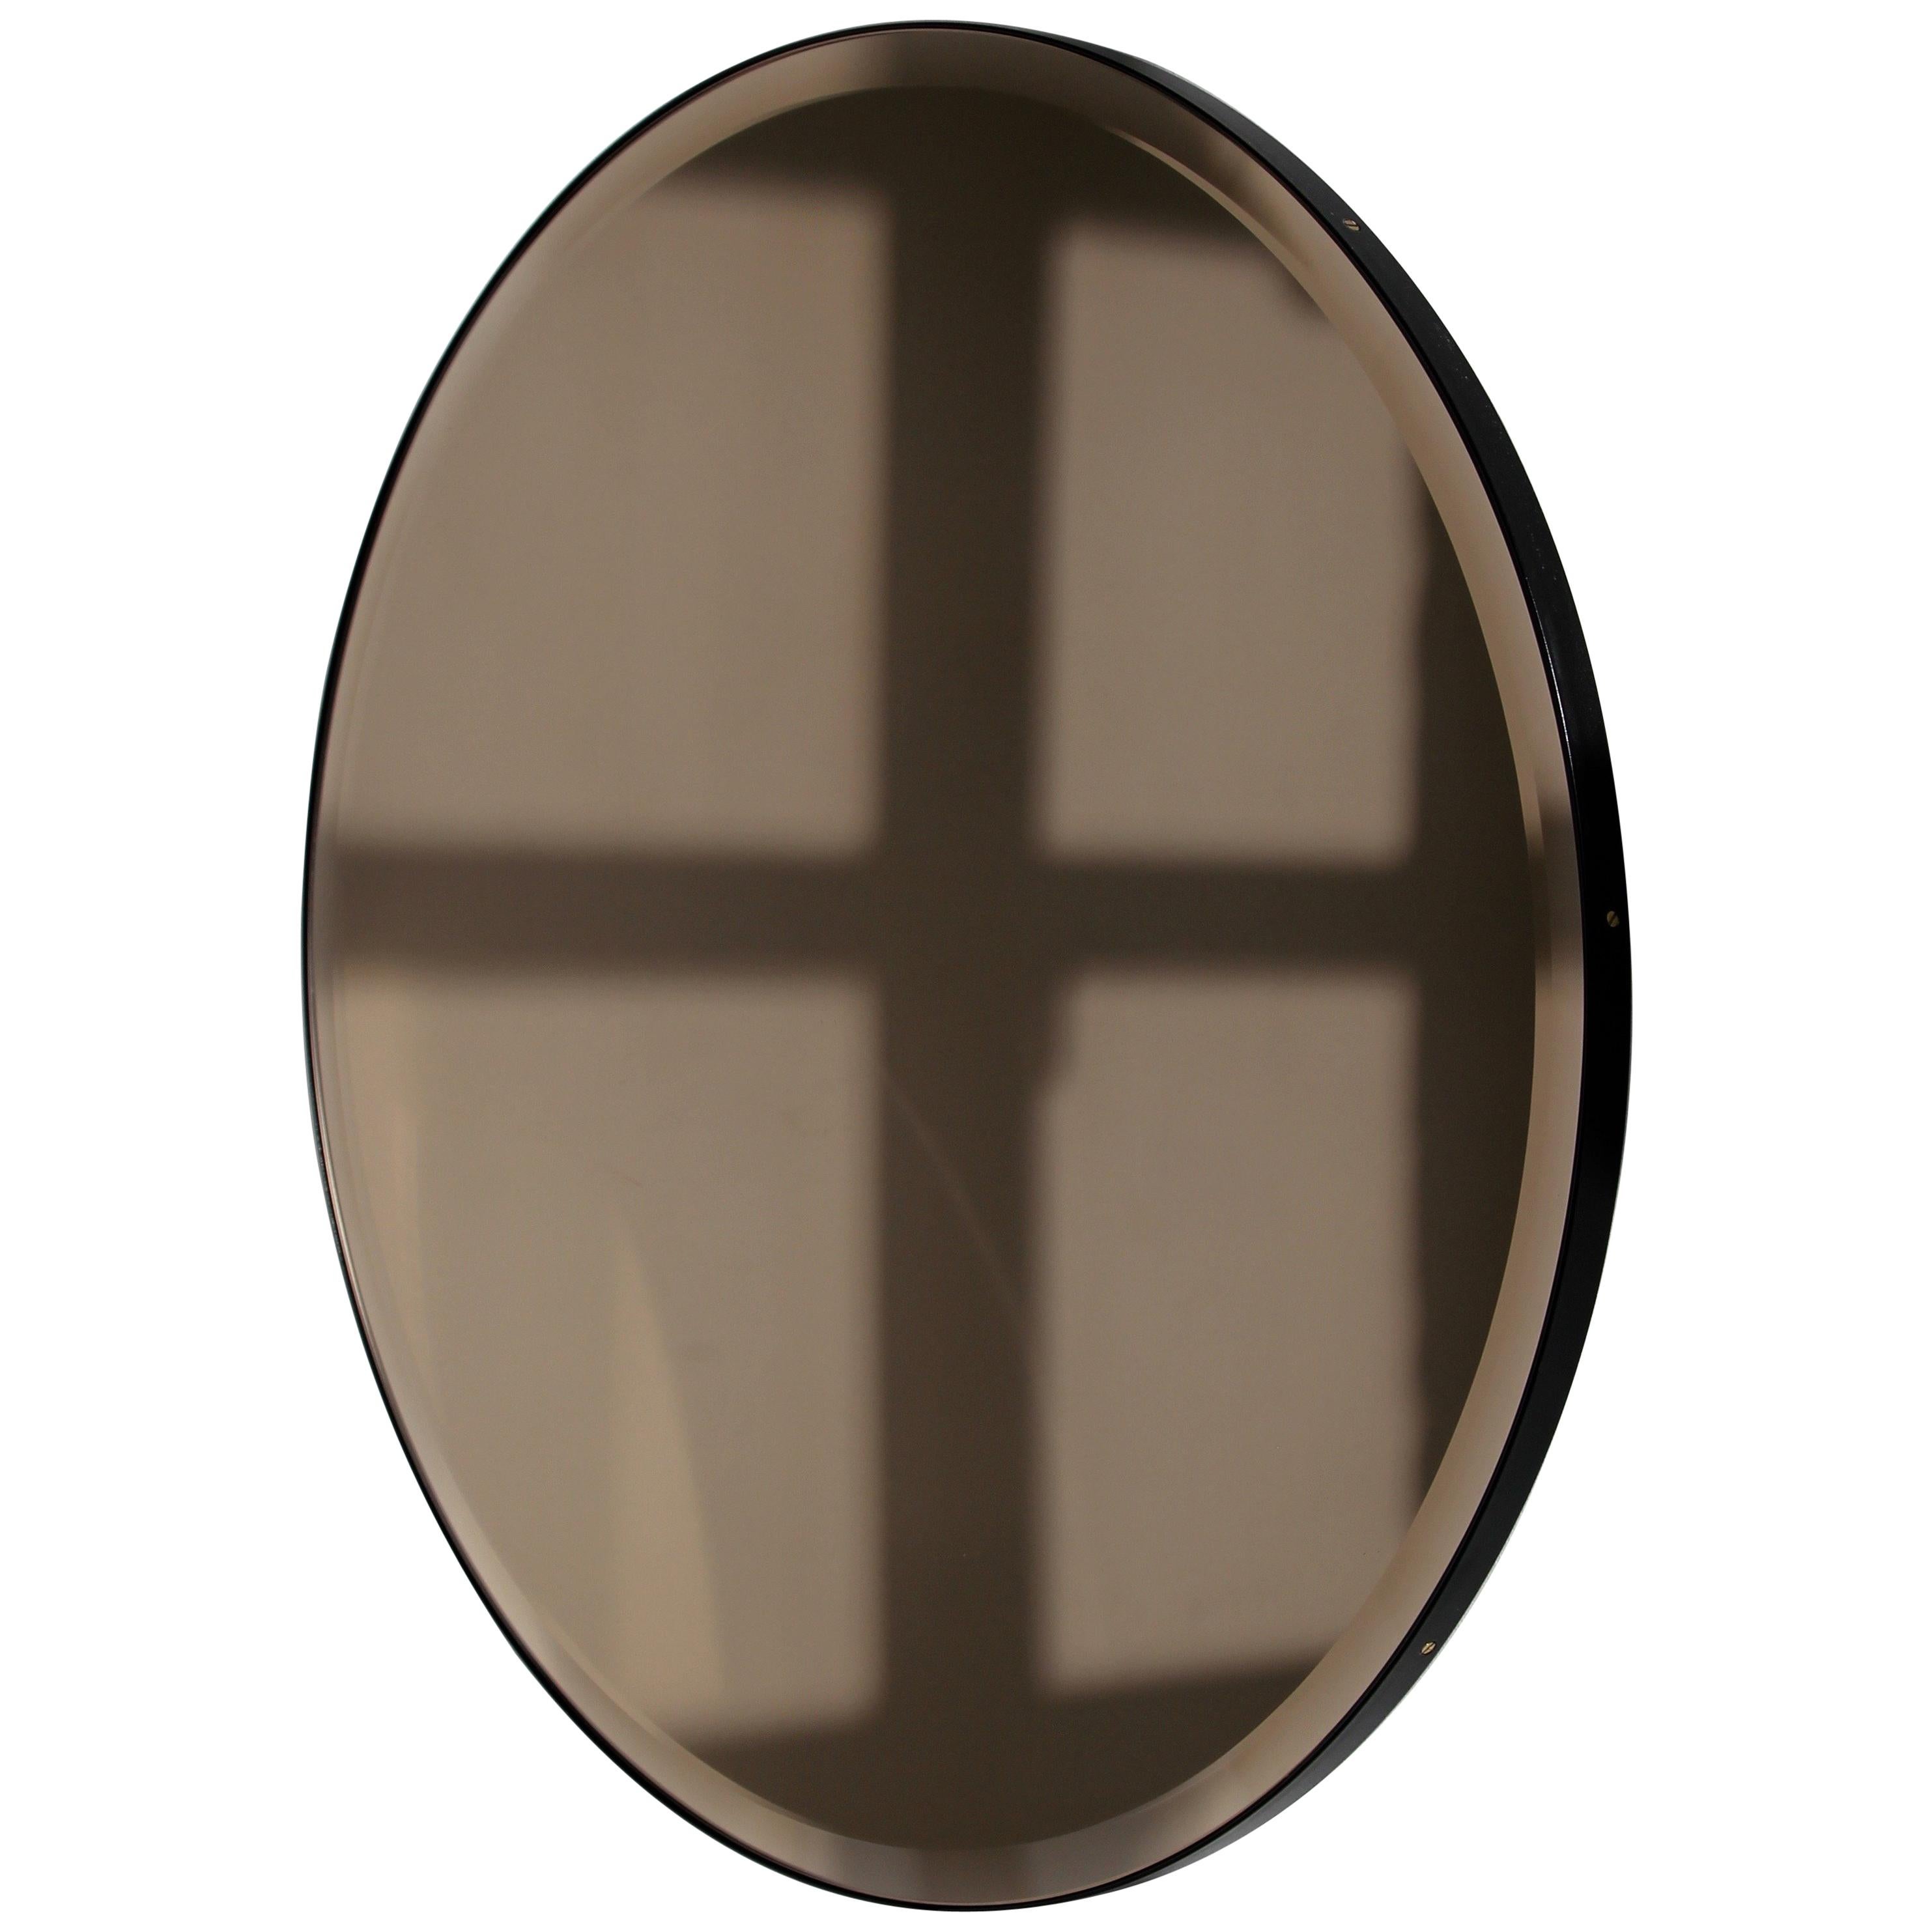 Dekorativer, abgeschrägter, bronzefarben getönter runder Spiegel mit einem eleganten, schwarz pulverbeschichteten Aluminiumrahmen. Entworfen und handgefertigt in London, UK.

Die mittelgroßen, großen und extragroßen Spiegel (60, 80 und 100 cm) sind